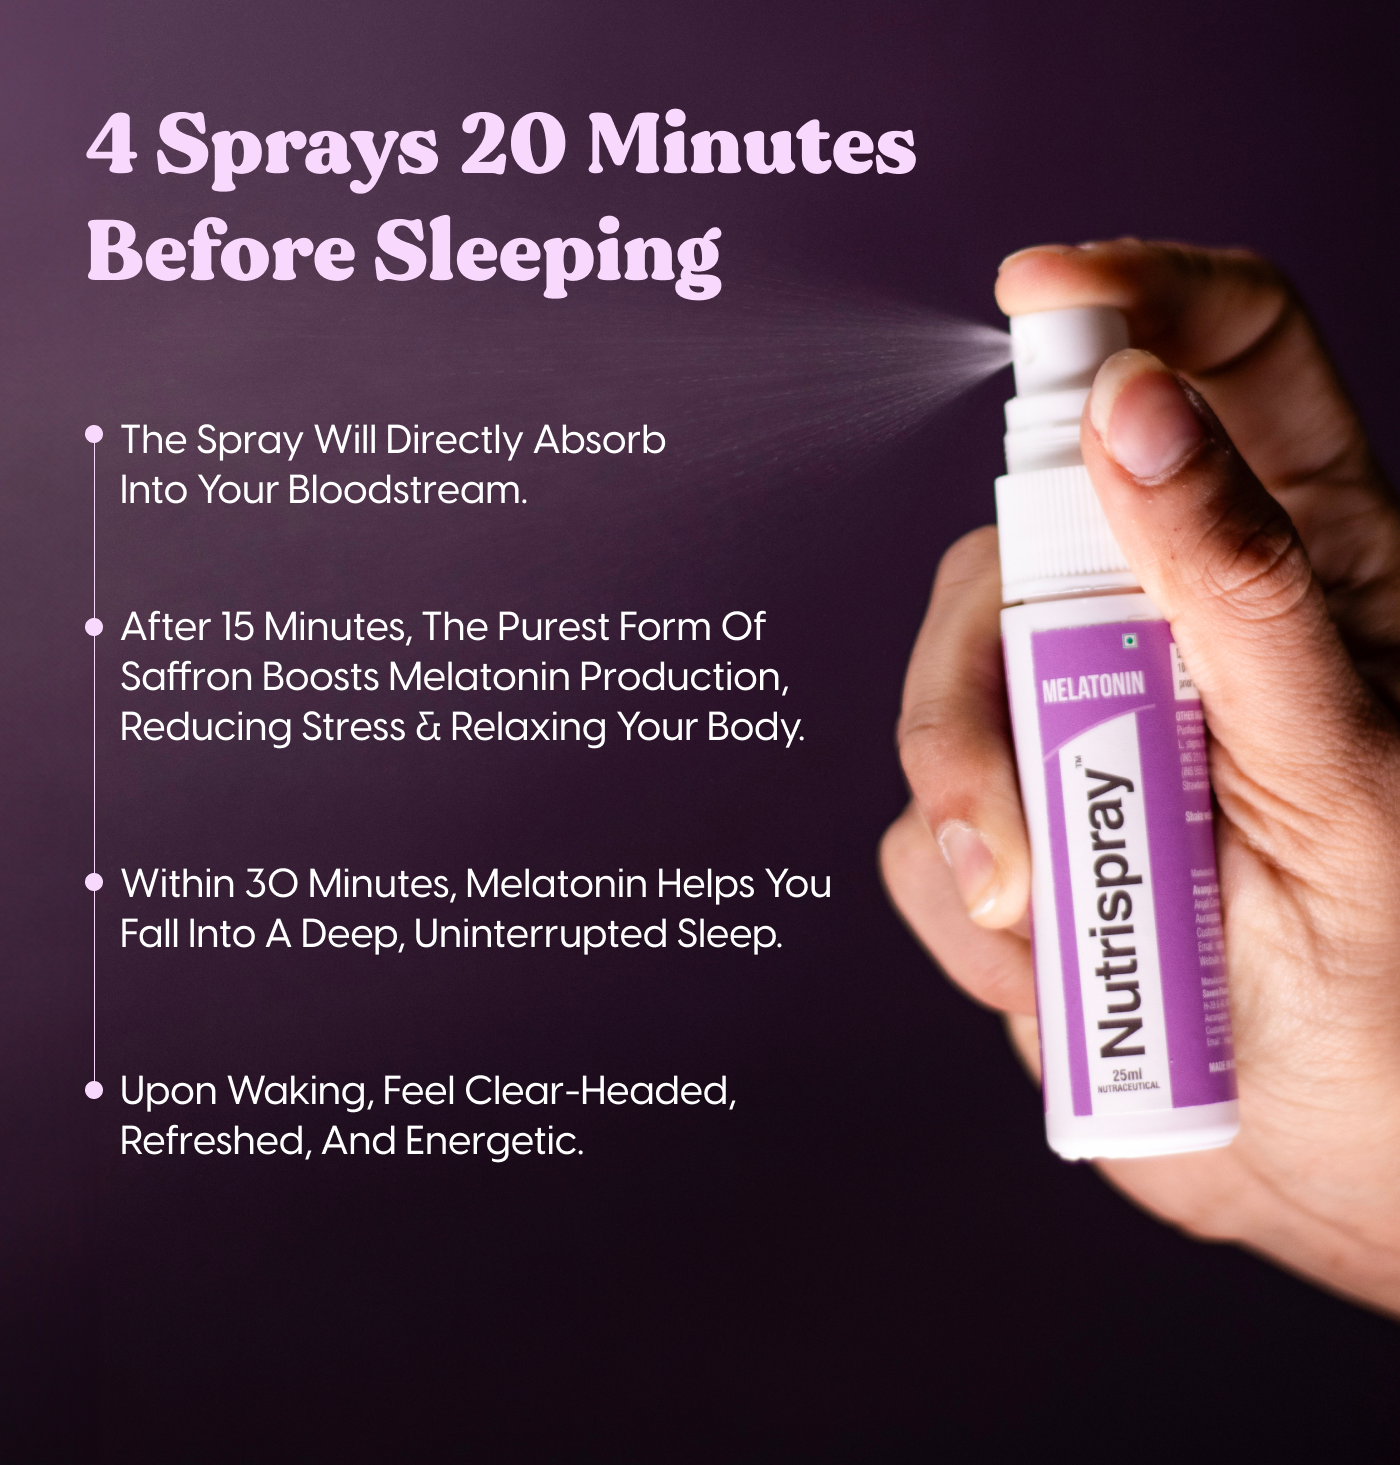 Deep Sleep Non-Addictive Melatonin Mouth Spray